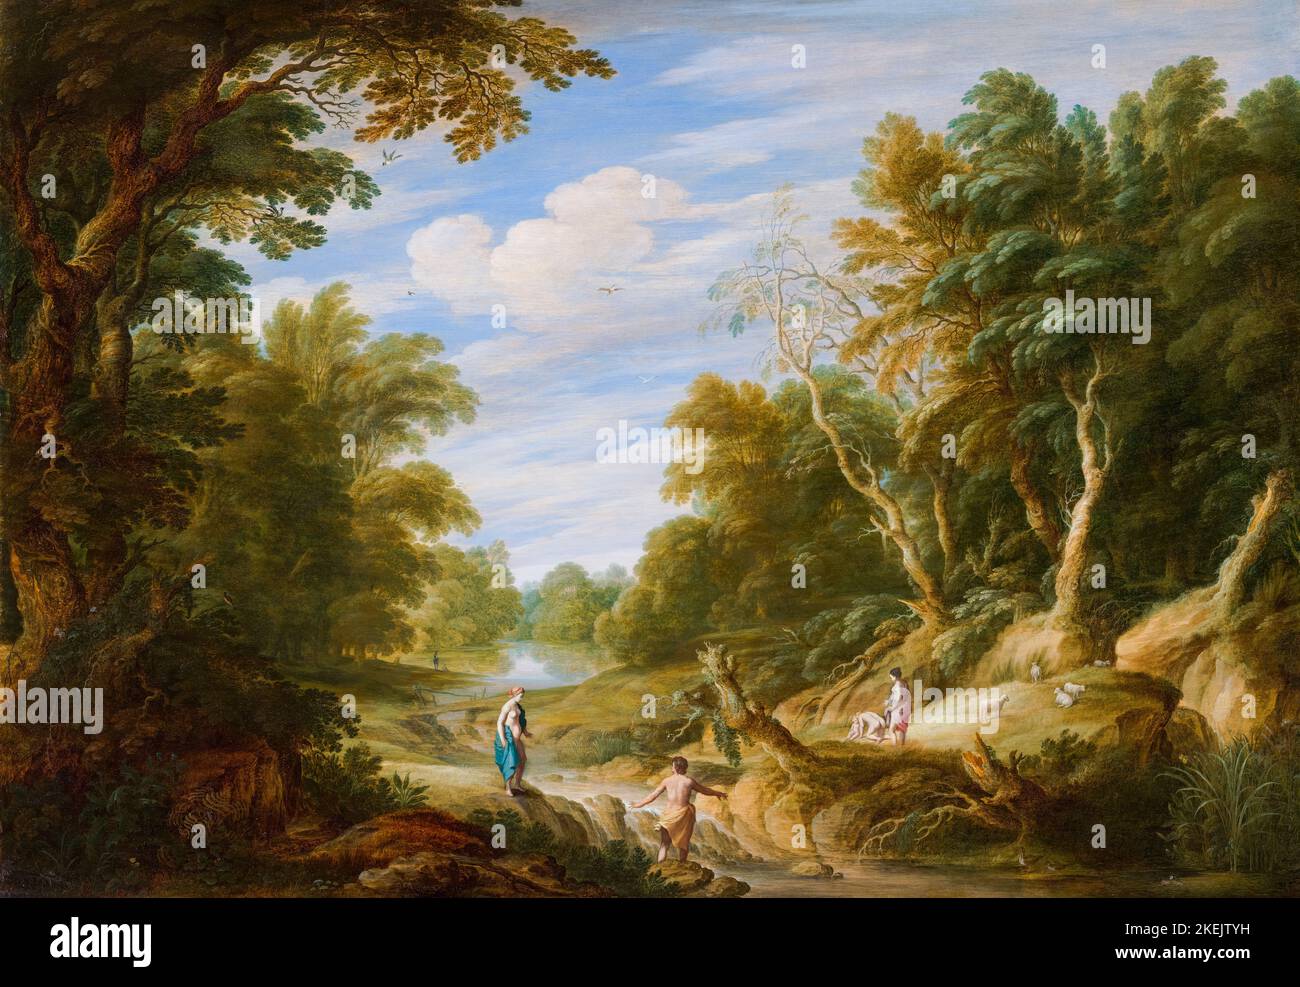 Alexander Keirincx (paysage) et Cornelis van Poelenburgh (figures) peinture, paysage forestier avec figures, huile sur panneau, 1629 Banque D'Images